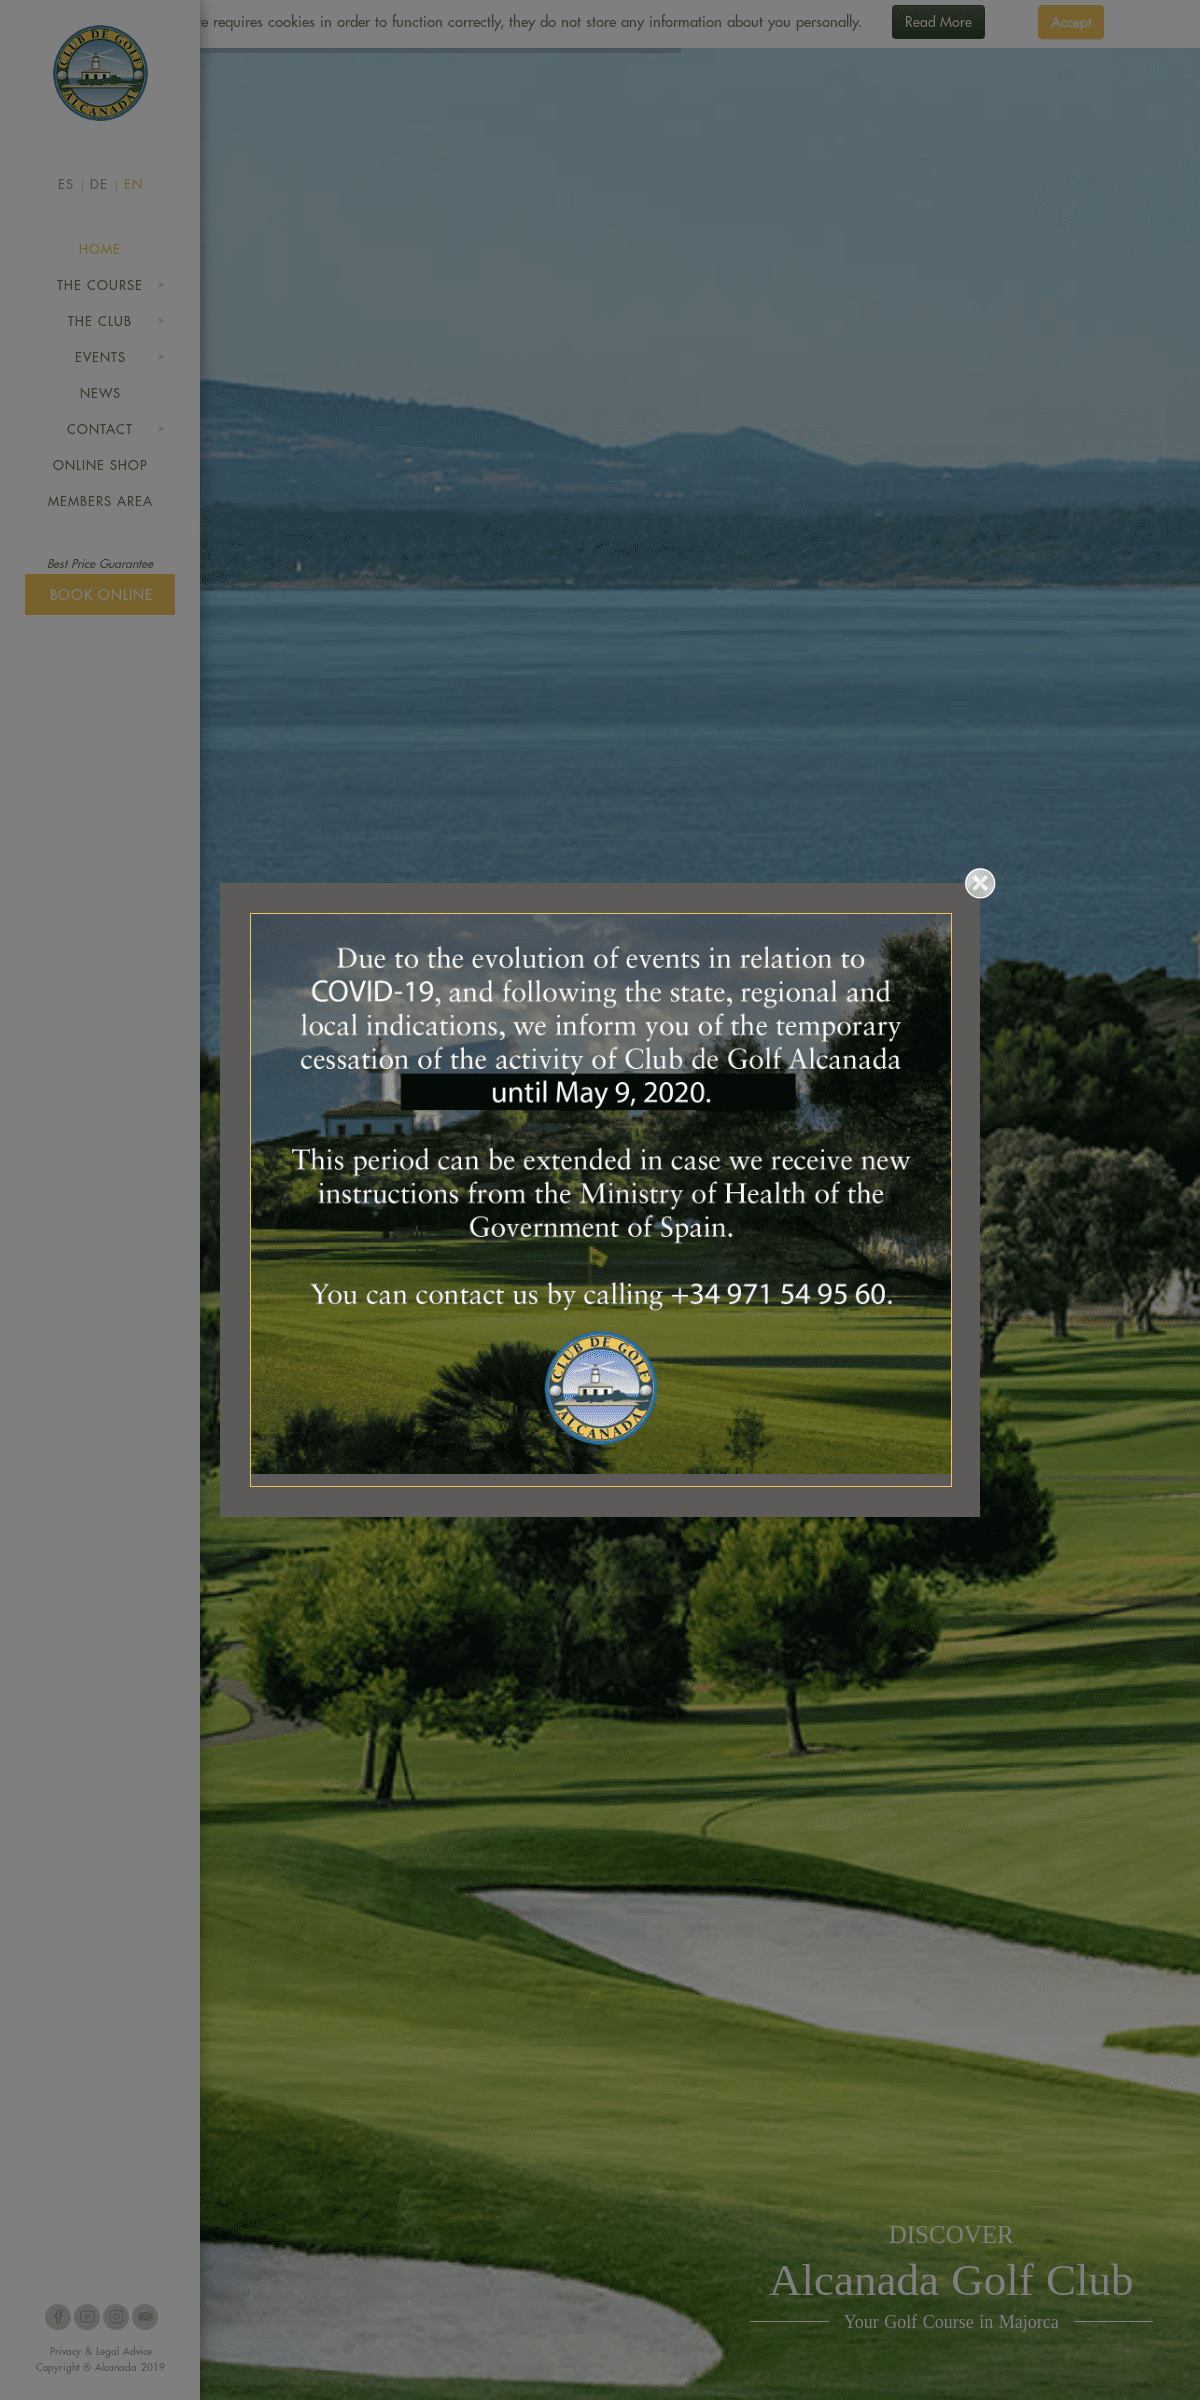 Alcanada golf club, golf in Majorca